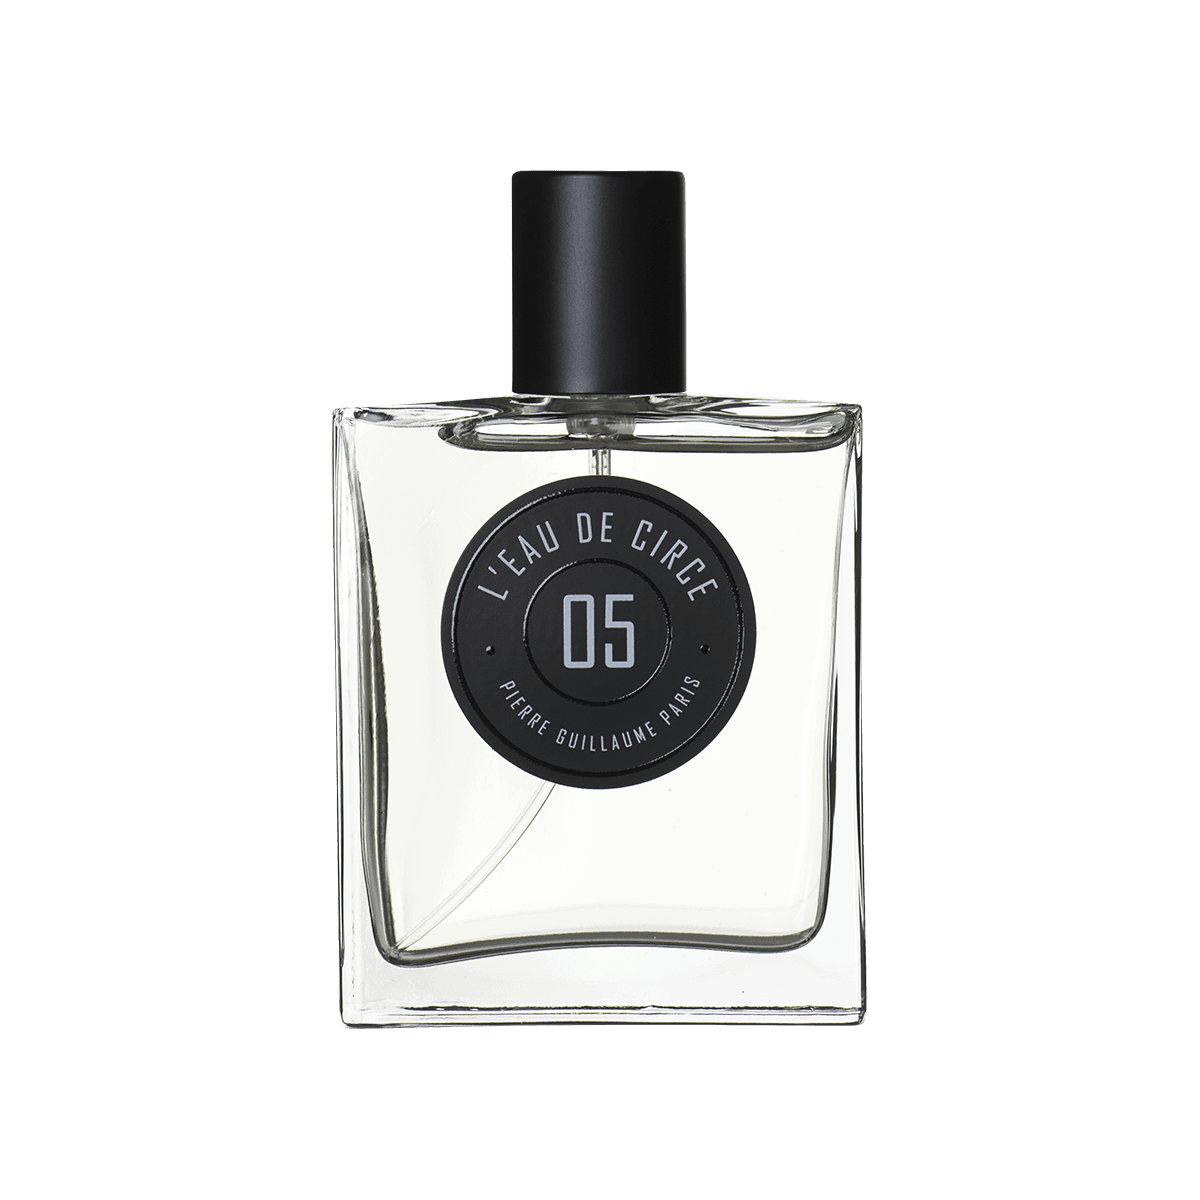 Pierre Guillaume Paris - 05 L'eau de circe 50 ml | Perfume Lounge